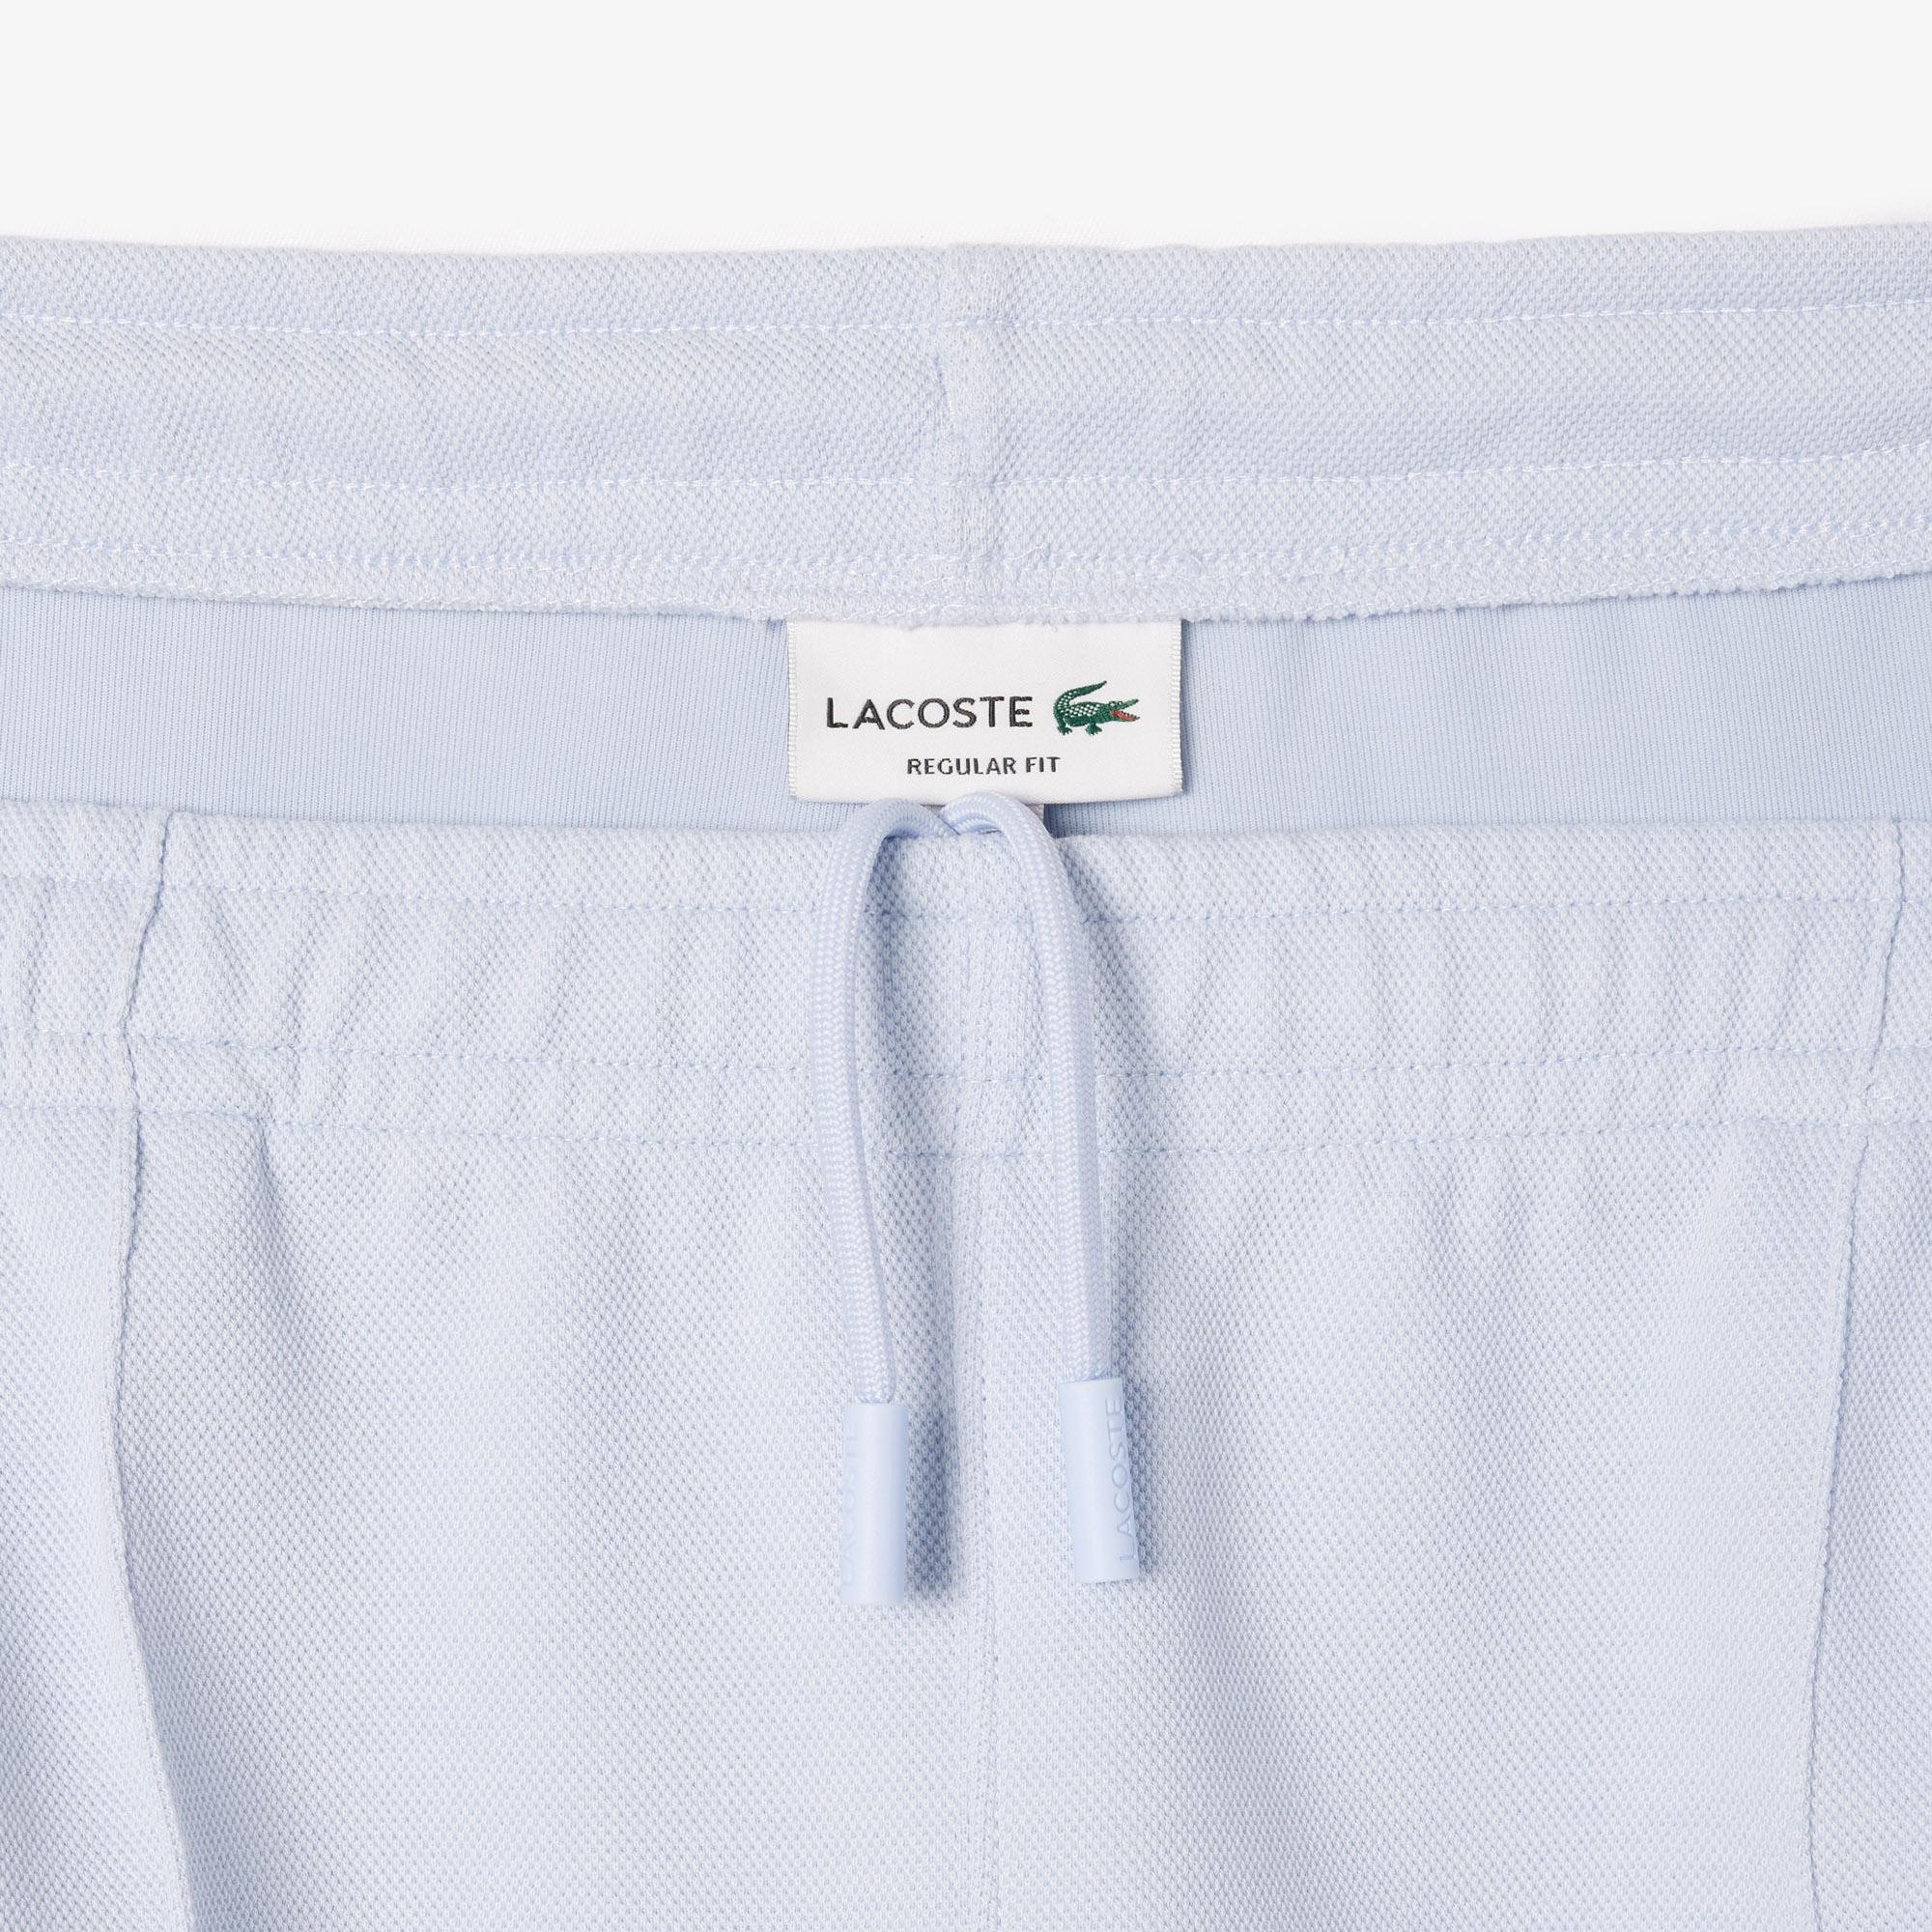 Lacoste jogger dupla piké melegítő nadrág